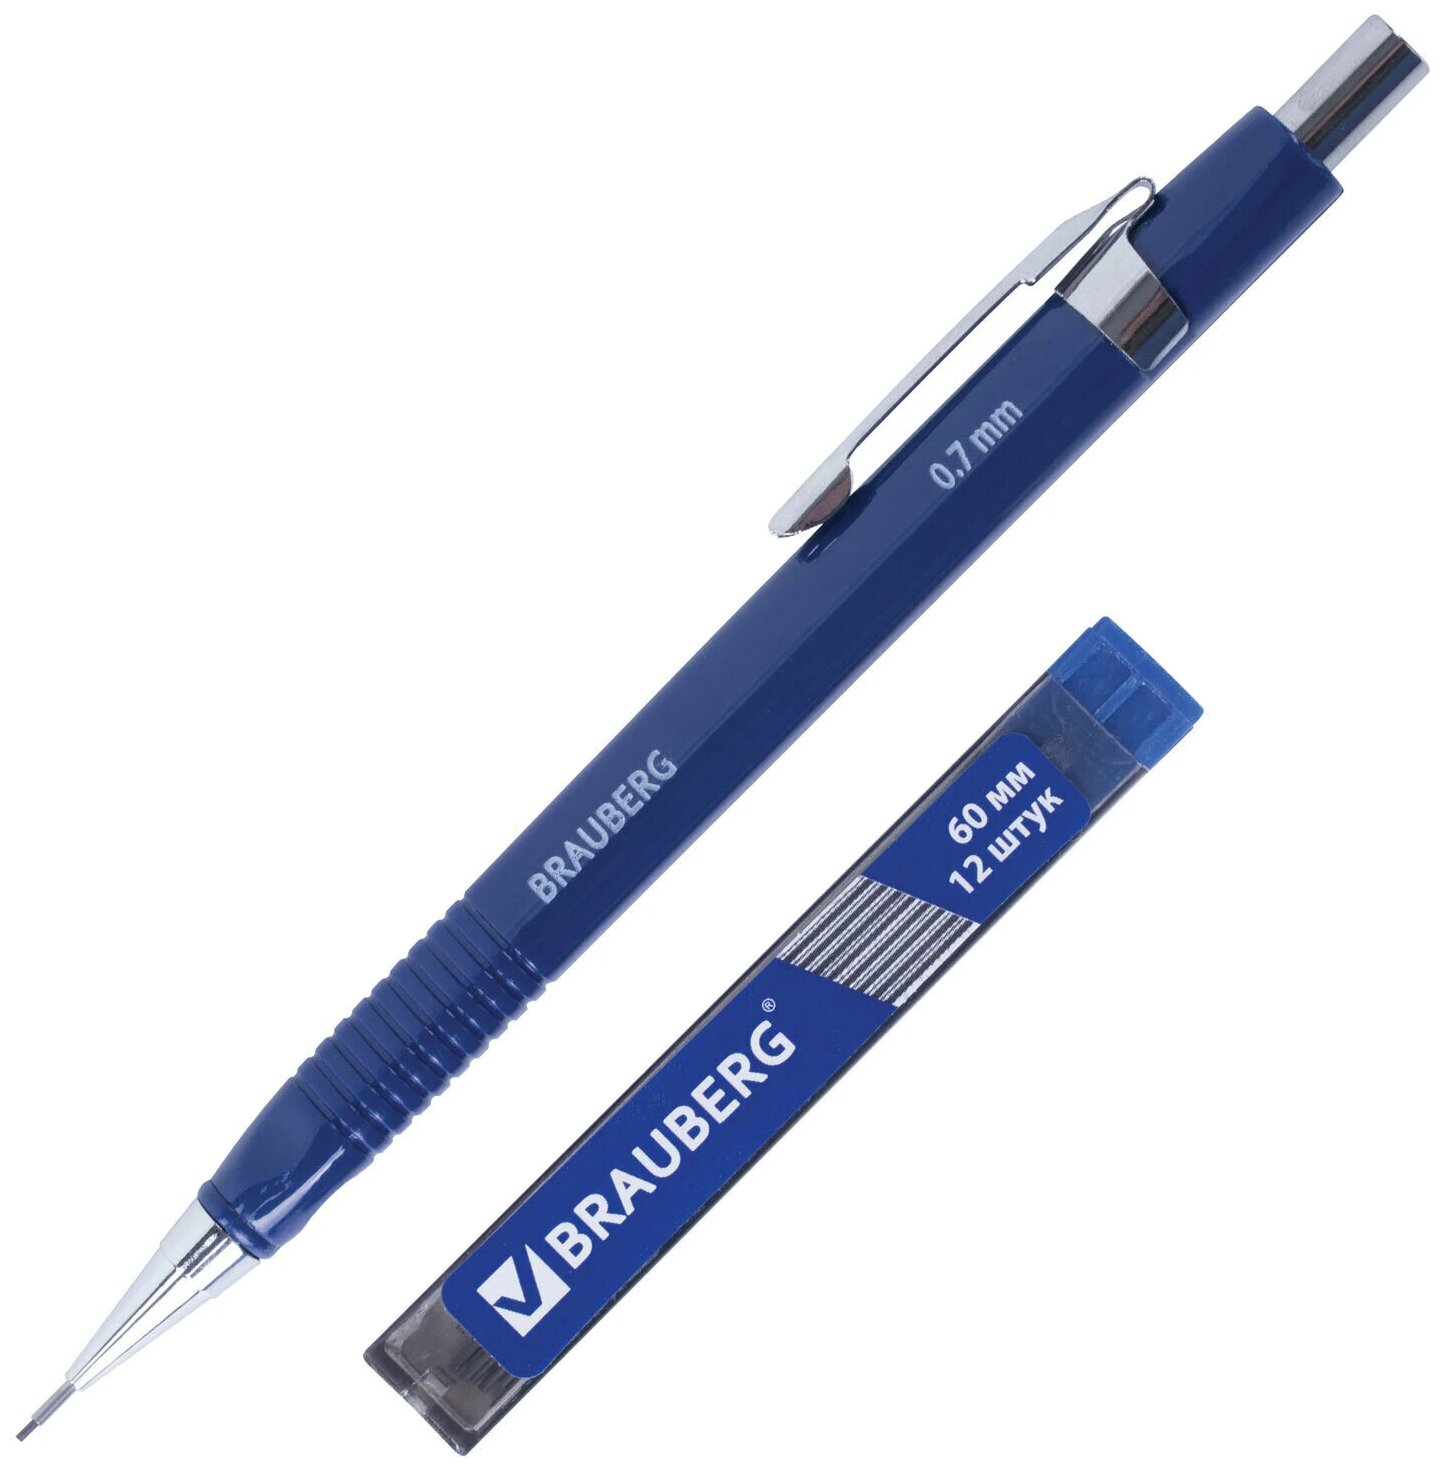 Набор BRAUBERG : механический карандаш, трёхгранный синий корпус + грифели HB, 0,7 мм, 12 штук, блистер, 180494